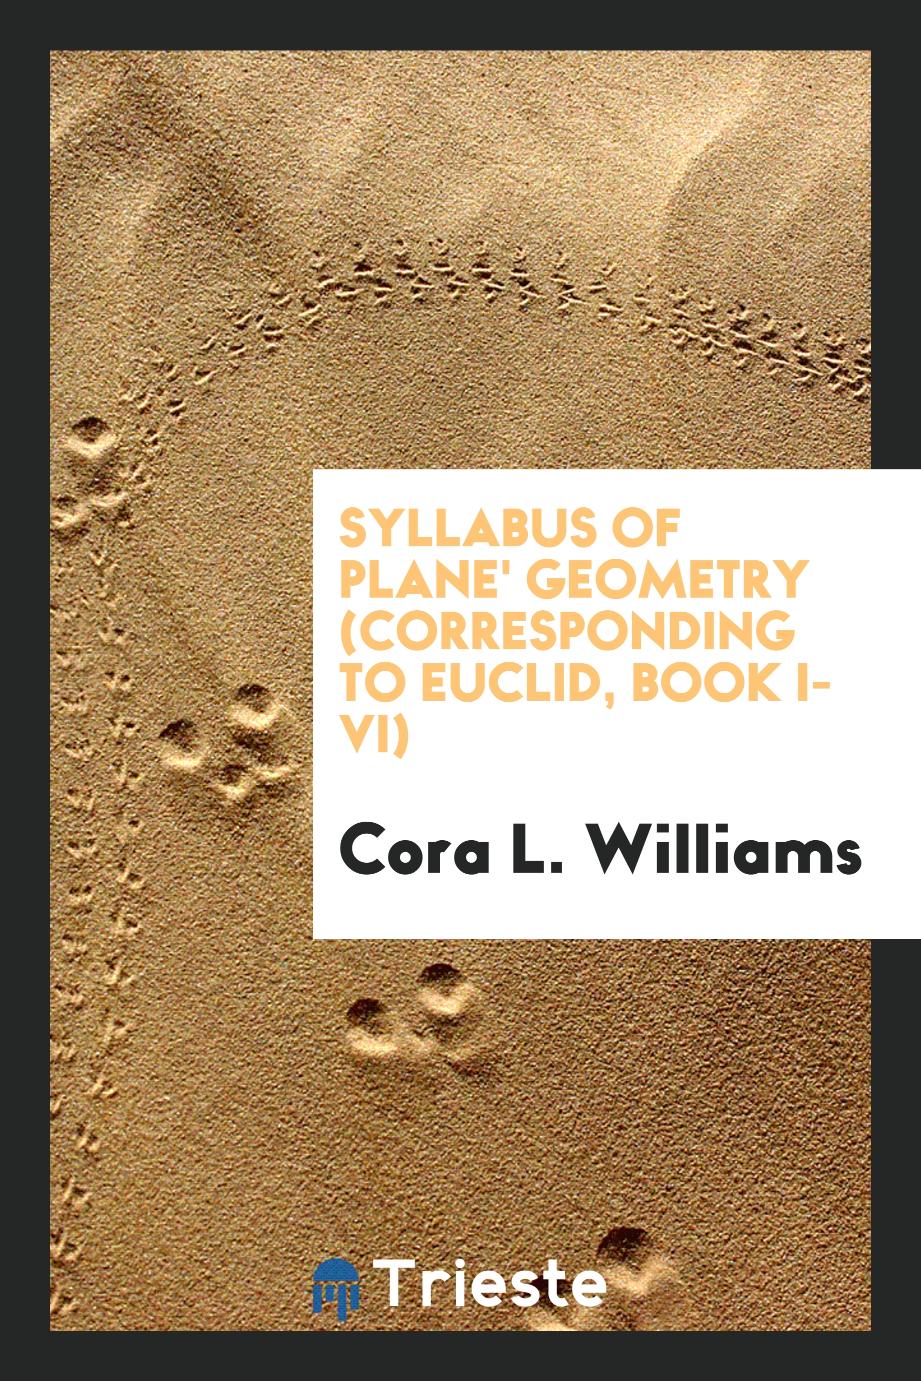 Syllabus of Plane' Geometry (corresponding to Euclid, Book I-VI)